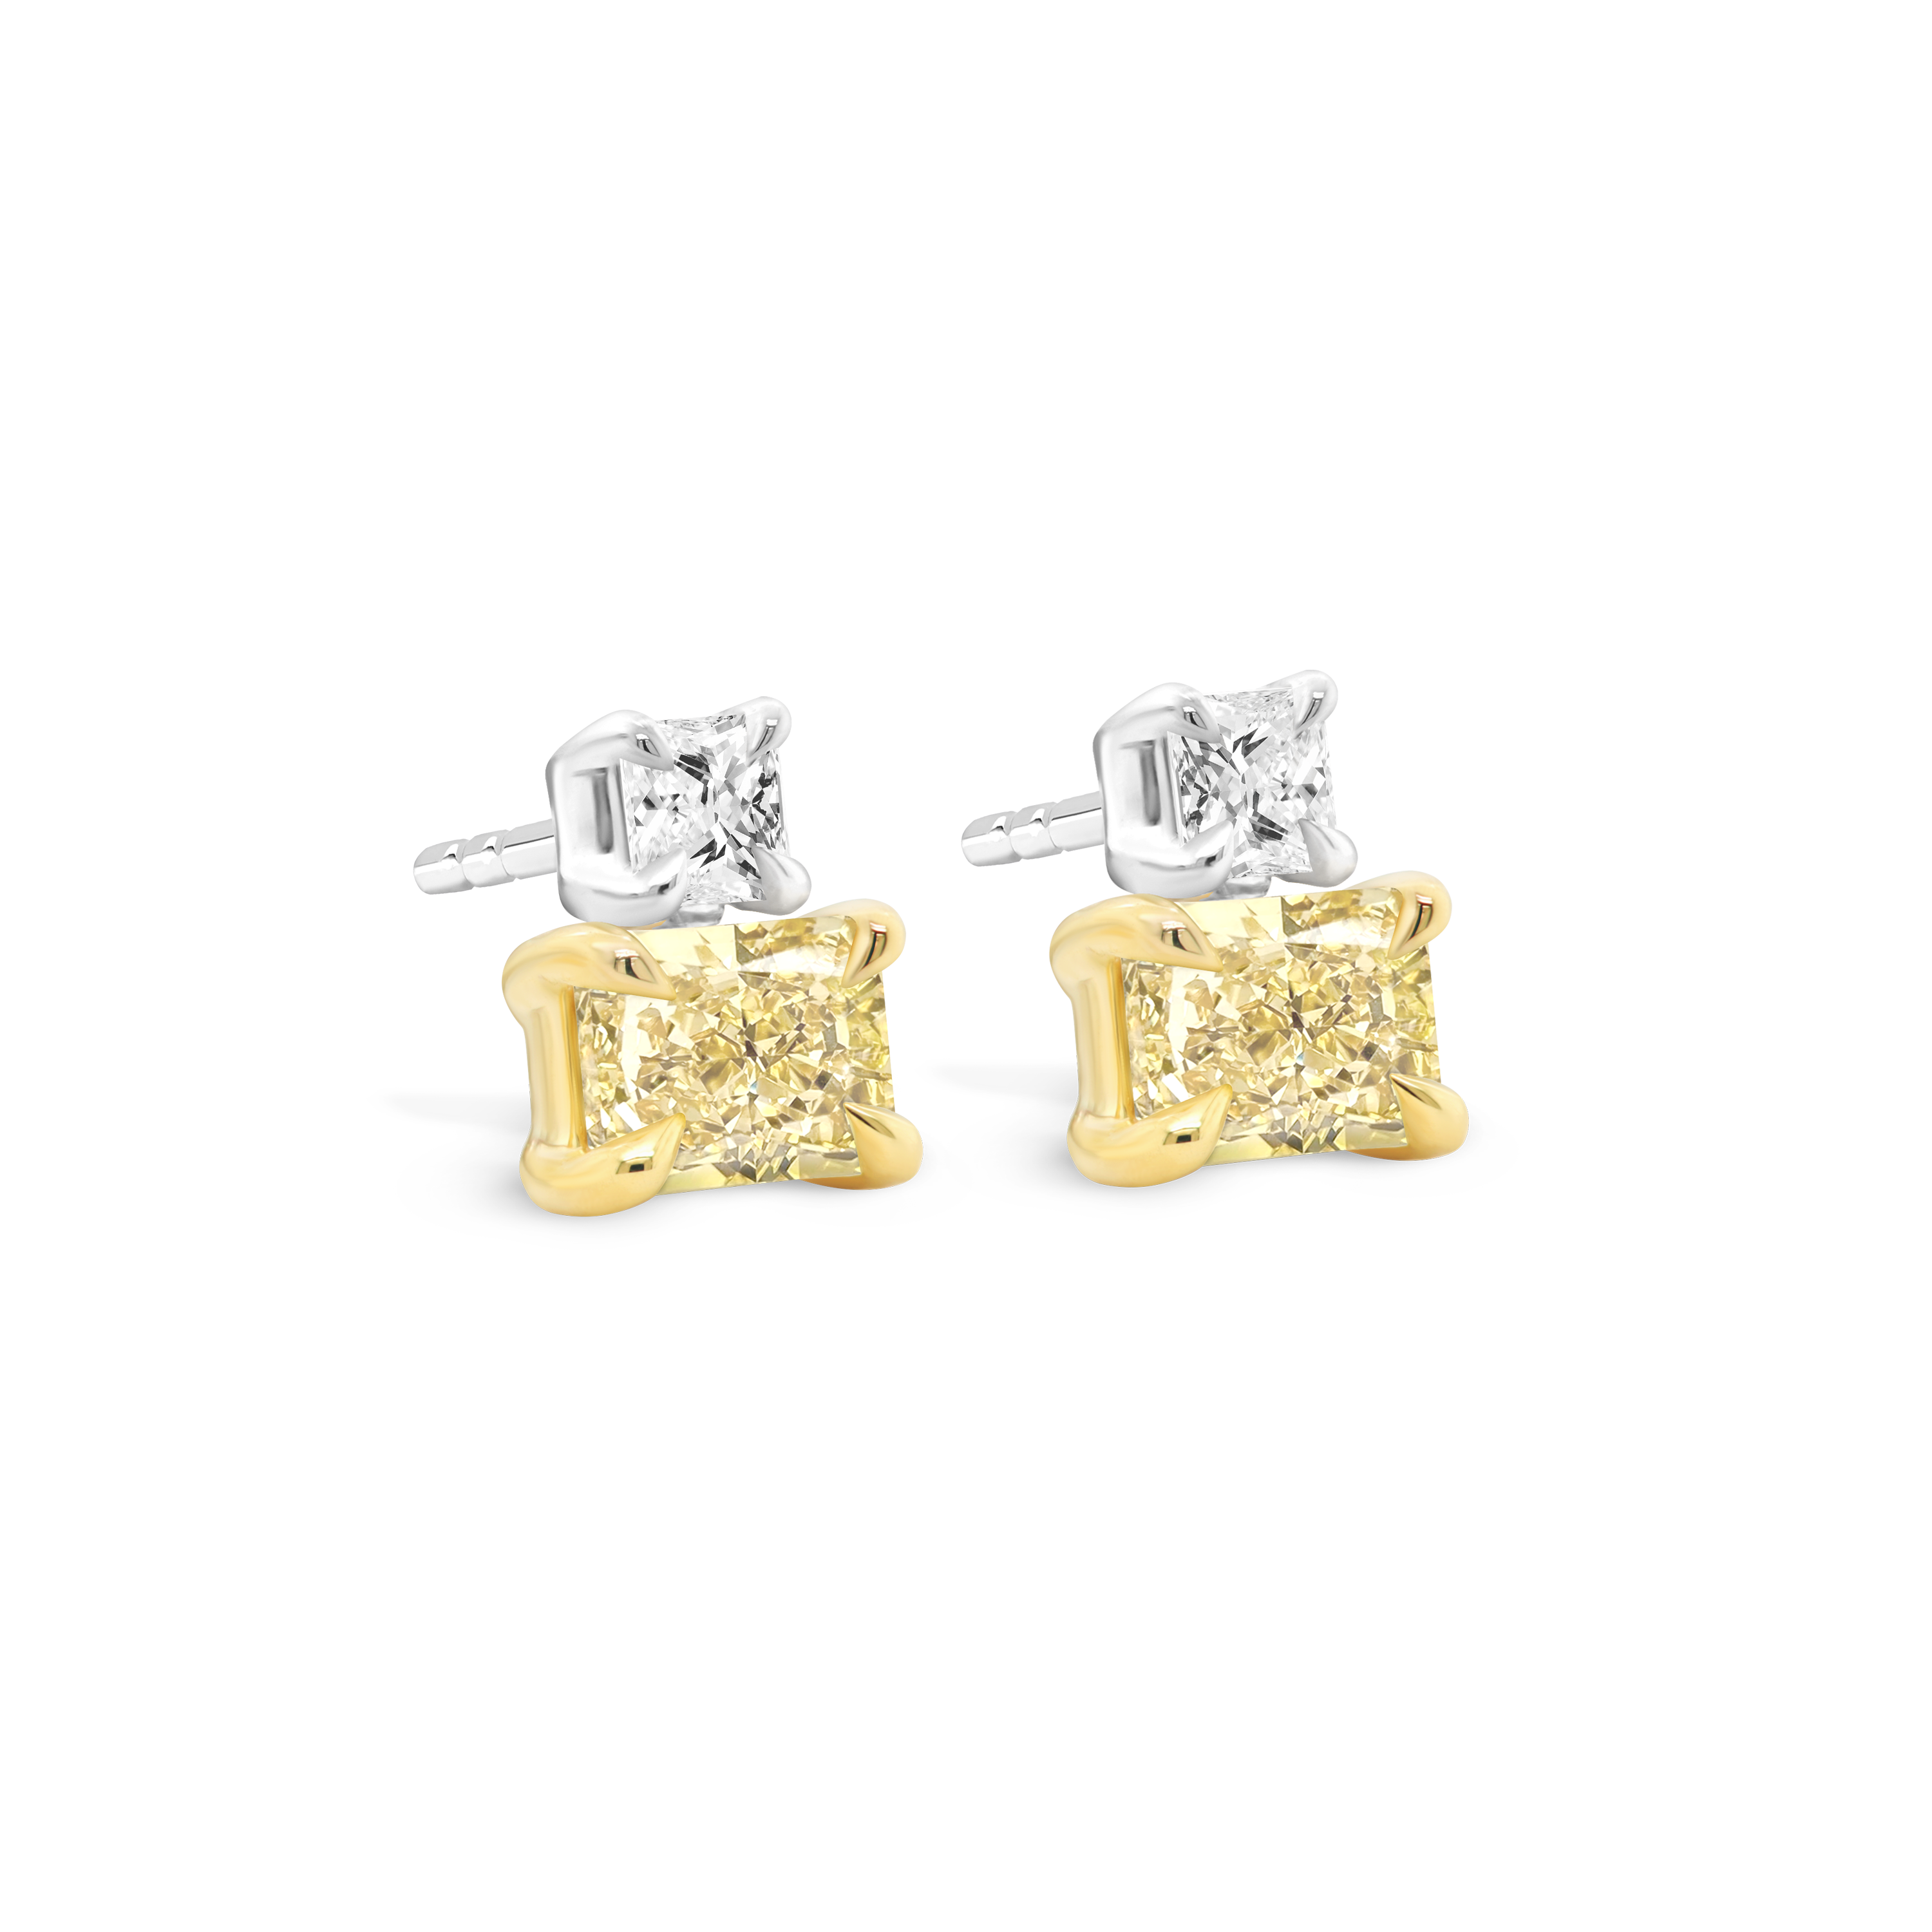 Beautiful Dangling Earrings with Yellow Diamonds | SCHMUCKTRAEUME.COM